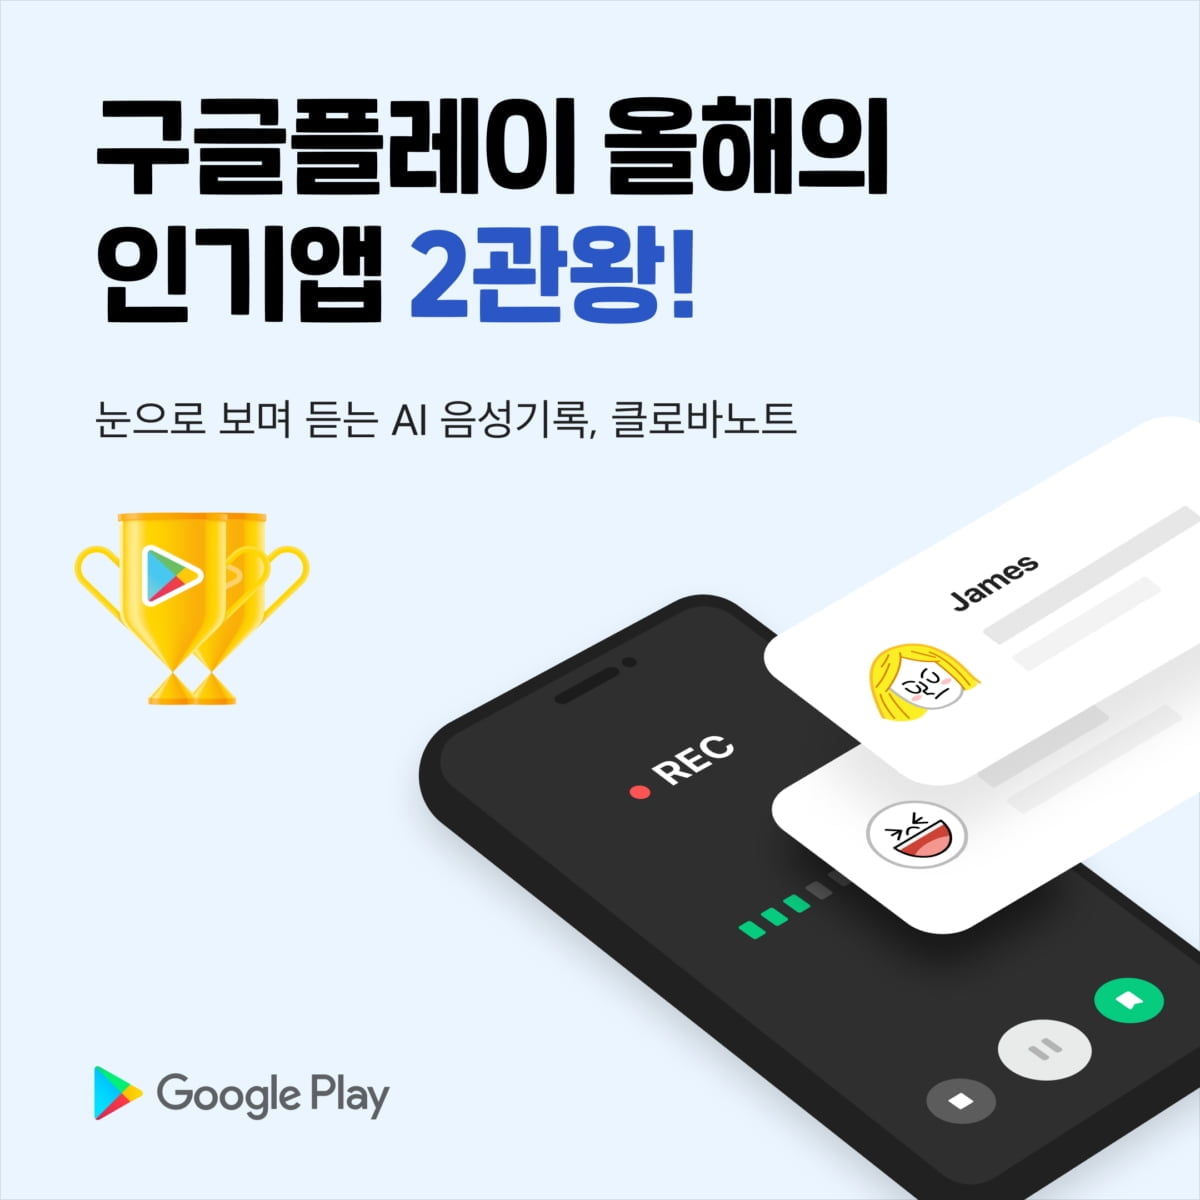 네이버 AI 클로바노트, 구글플레이 '인기 앱' 2관왕